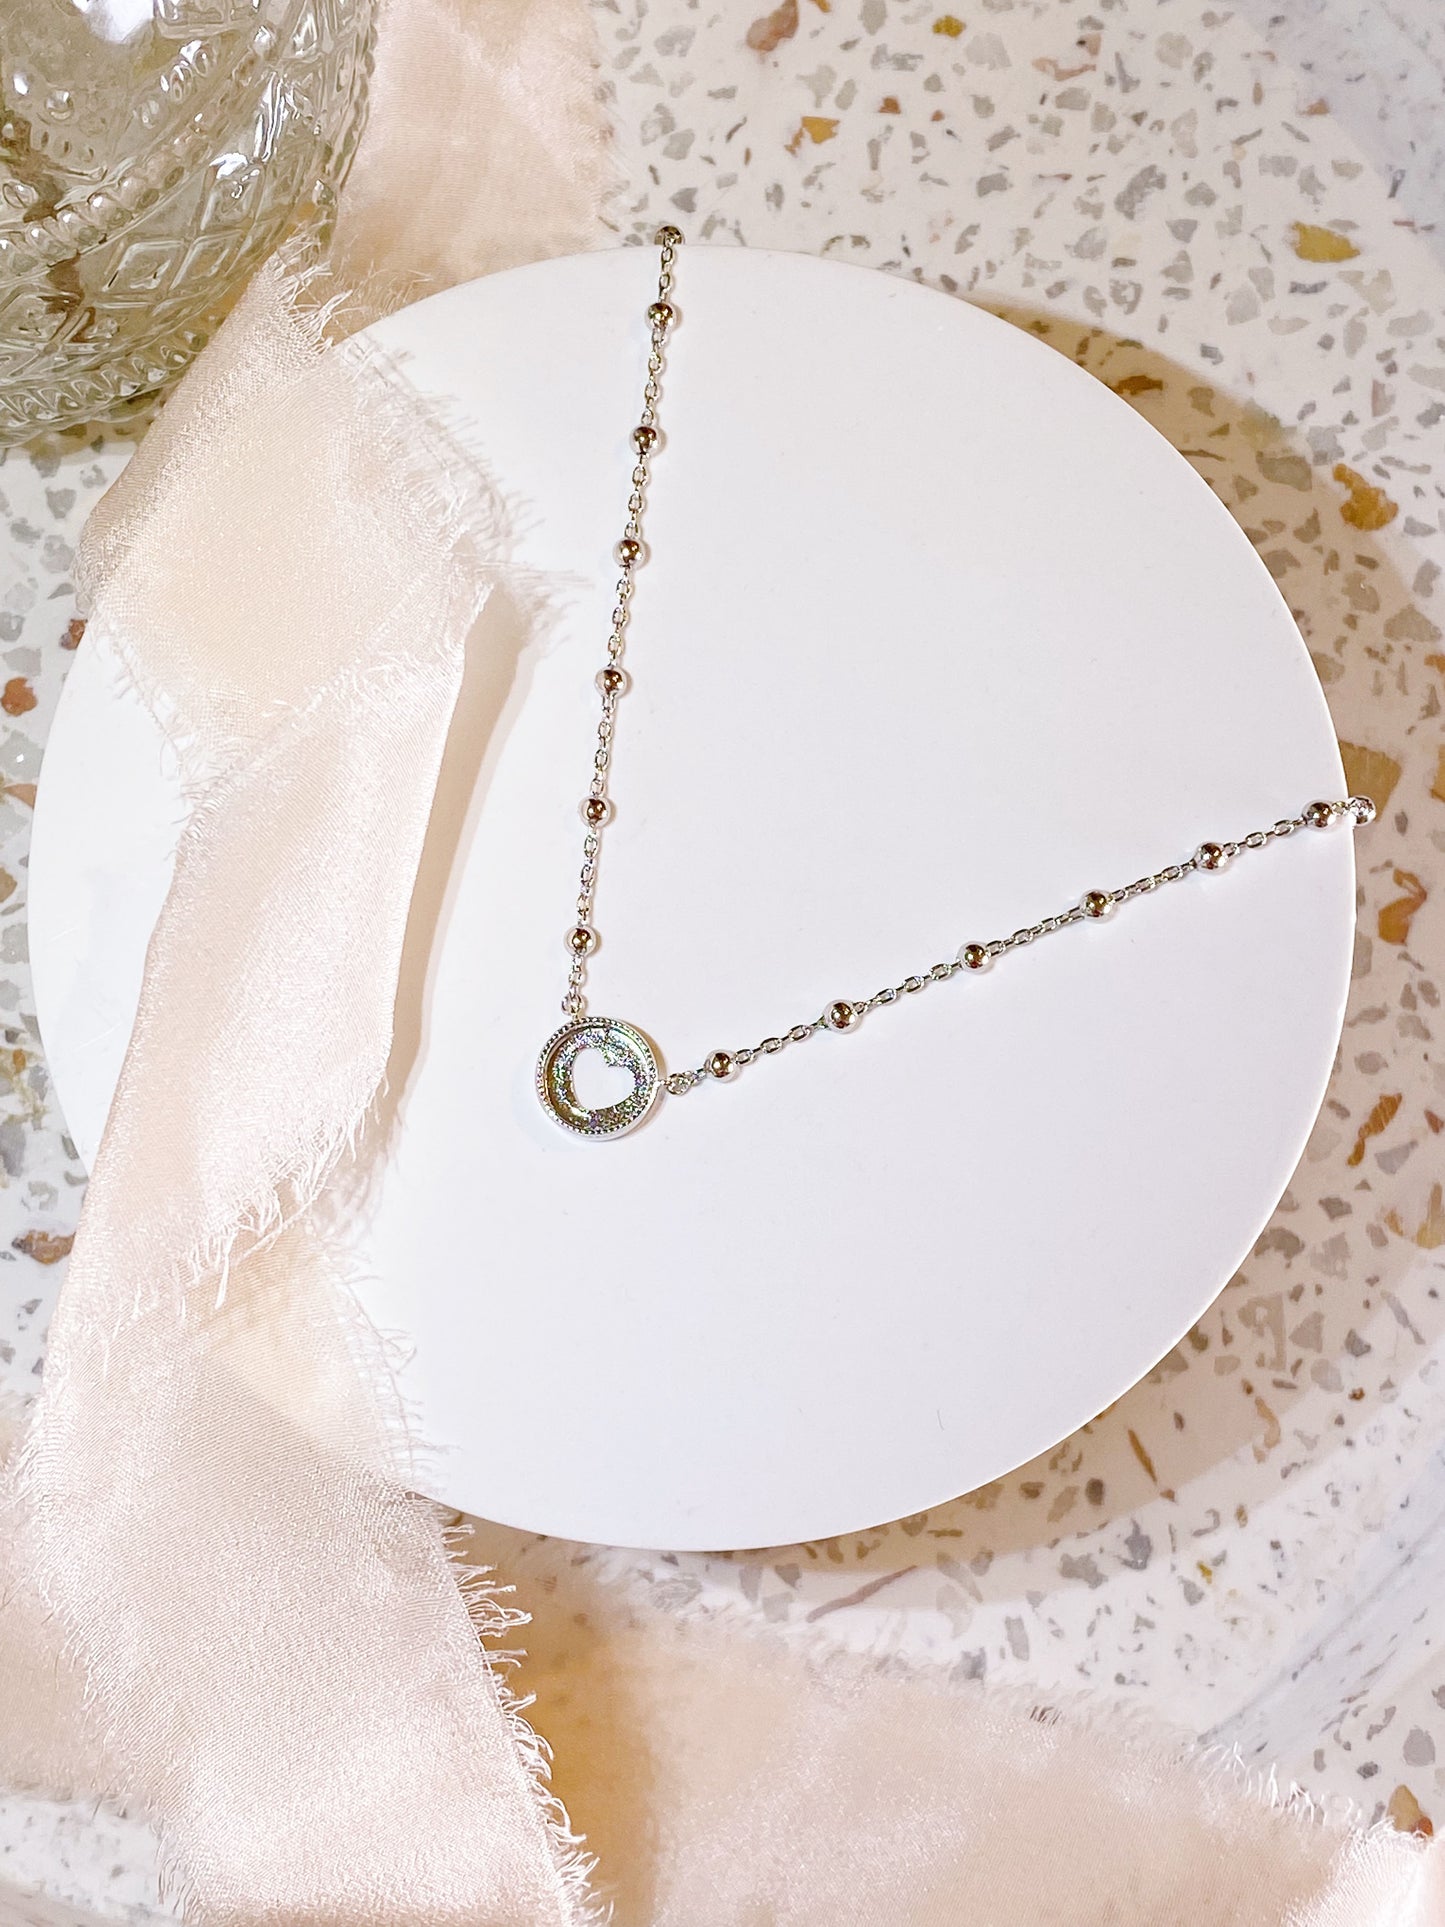 BreastmilkGems™ DIY kit with Gratitude Necklace and Bracelet